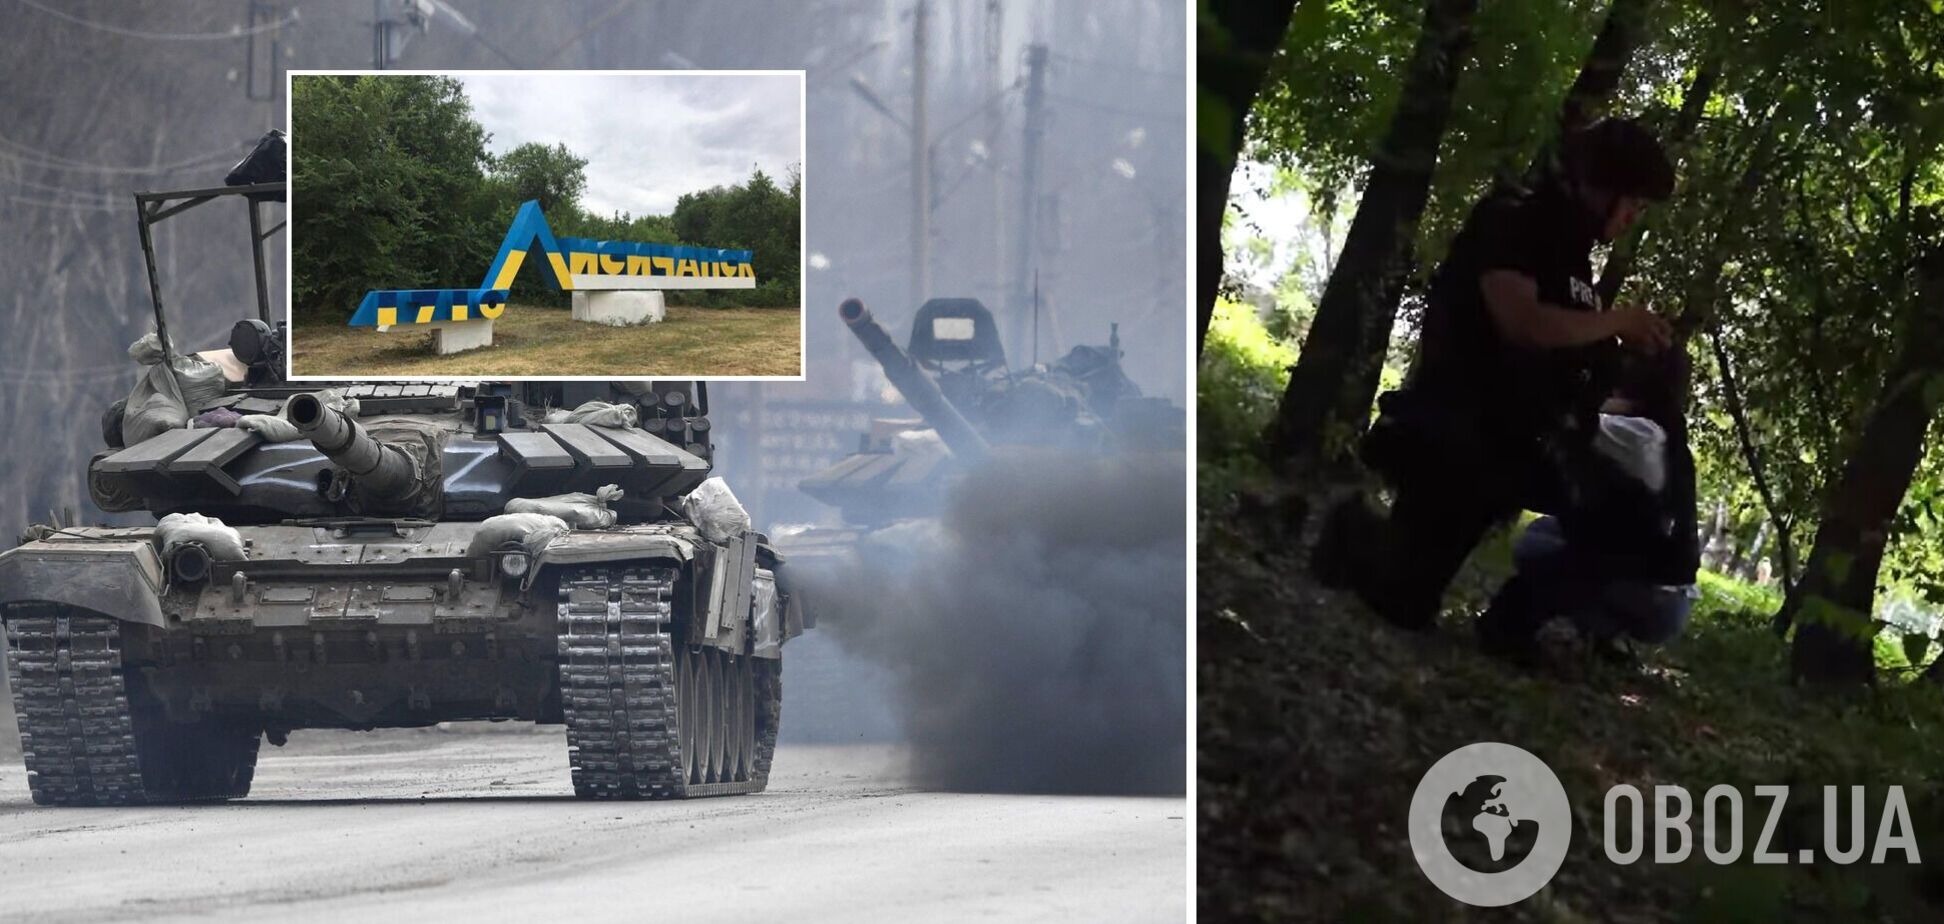 Українські журналісти потрапили під обстріл окупантів у центрі Лисичанська. Відео